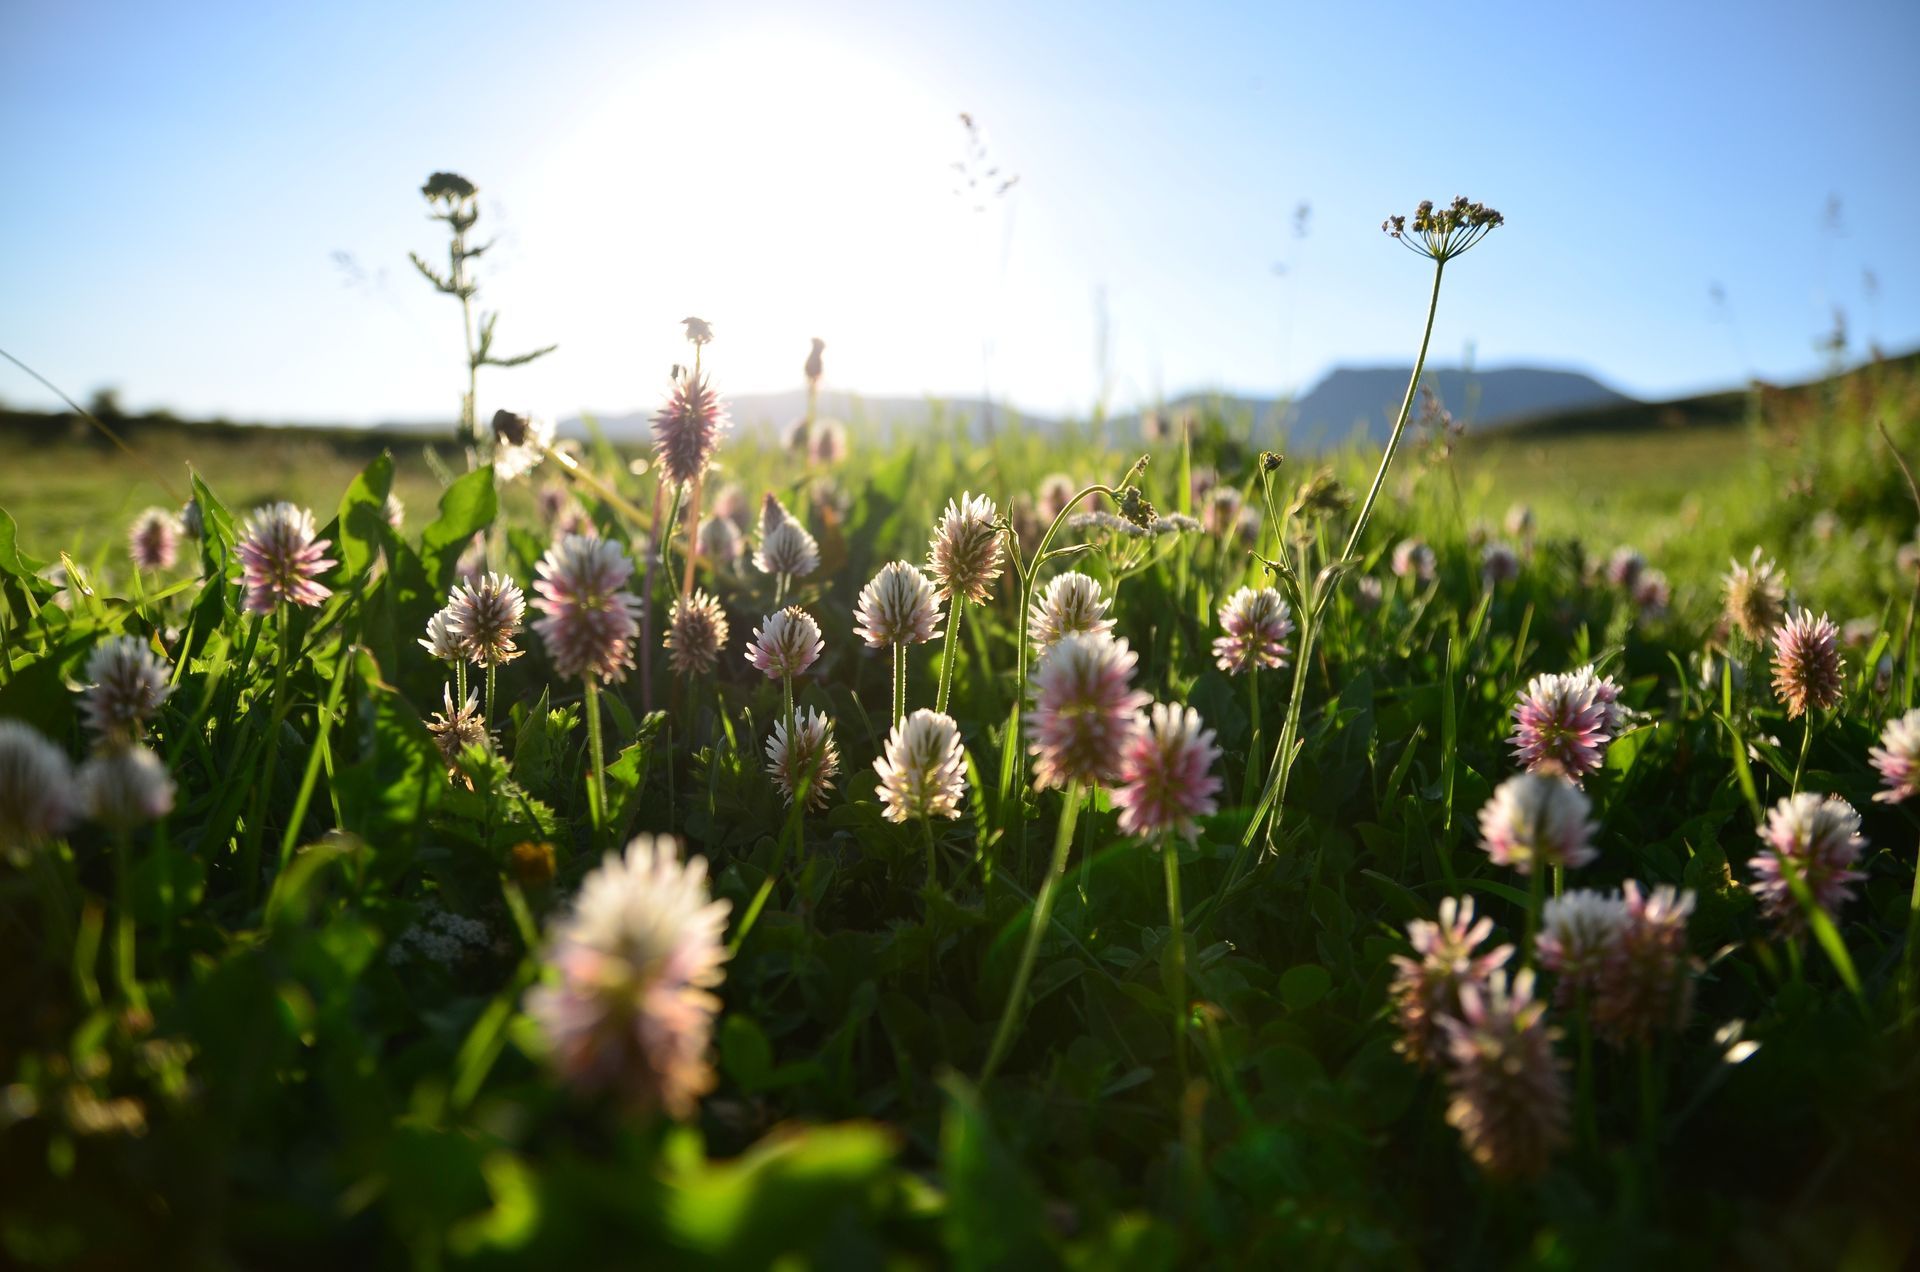 Flowers in a sunny field